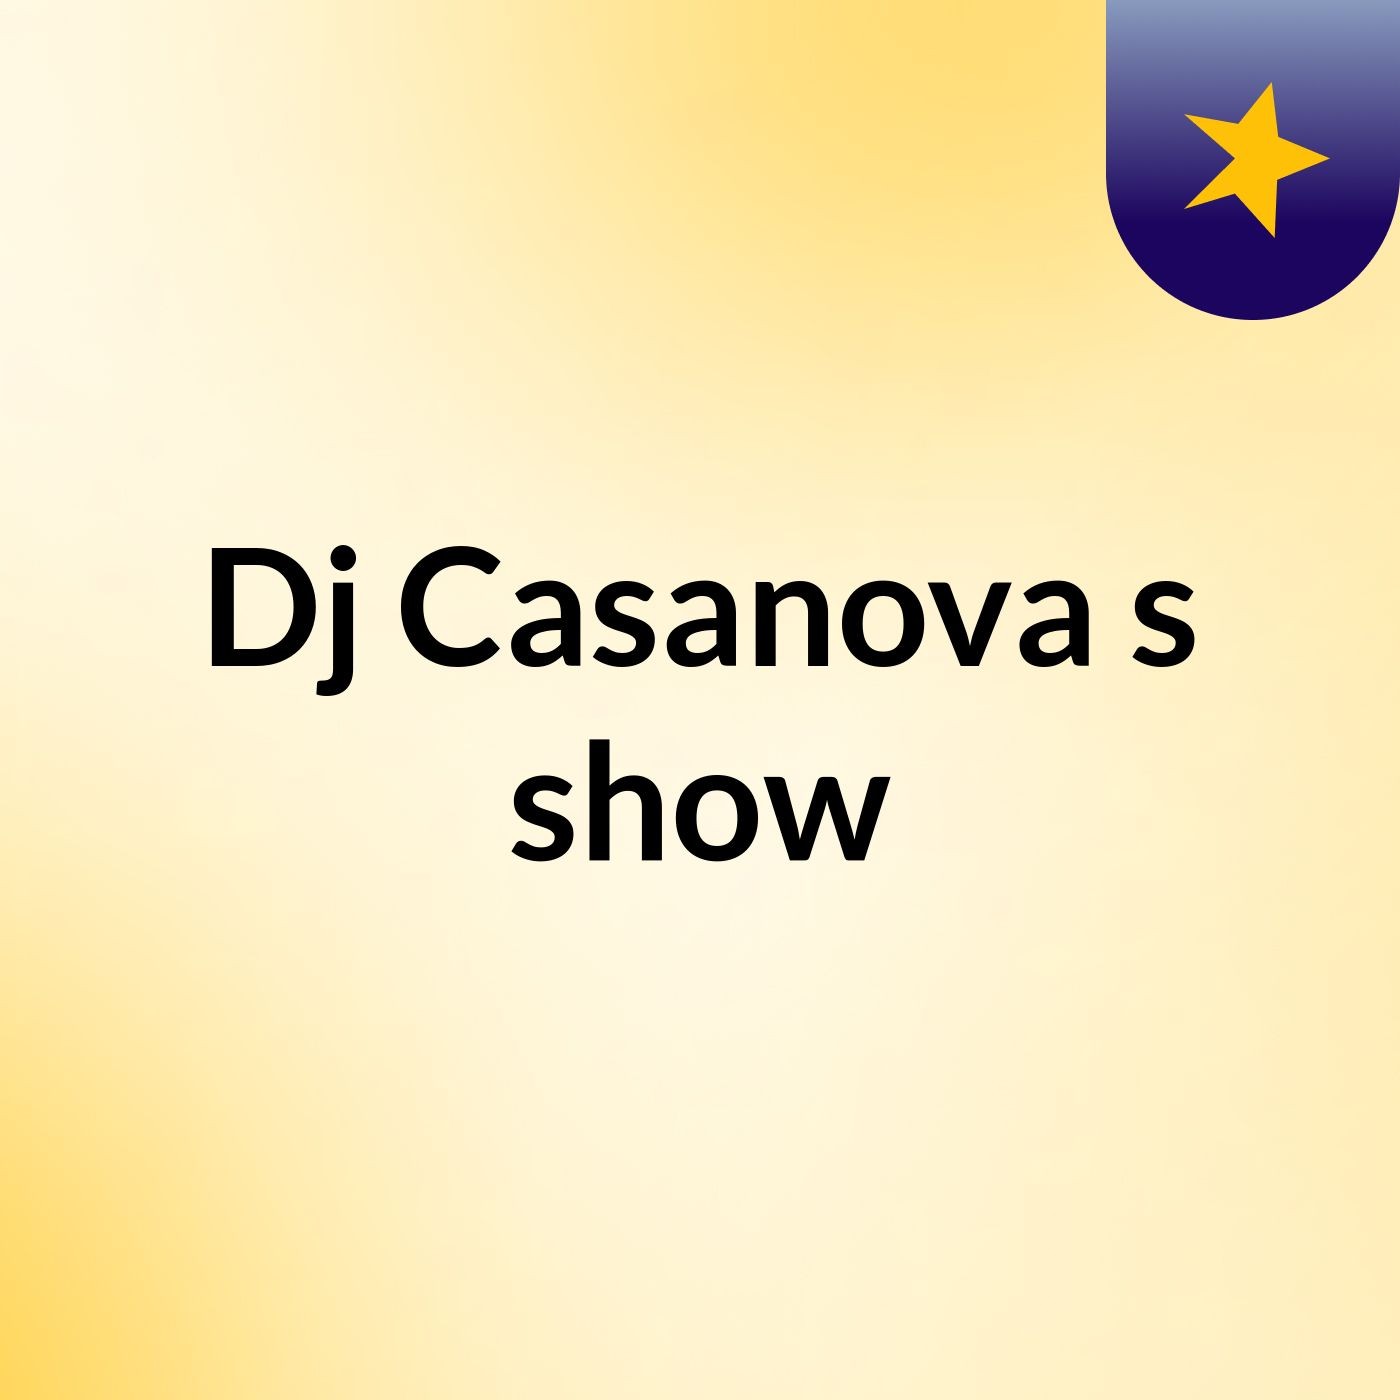 Dj Casanova's show